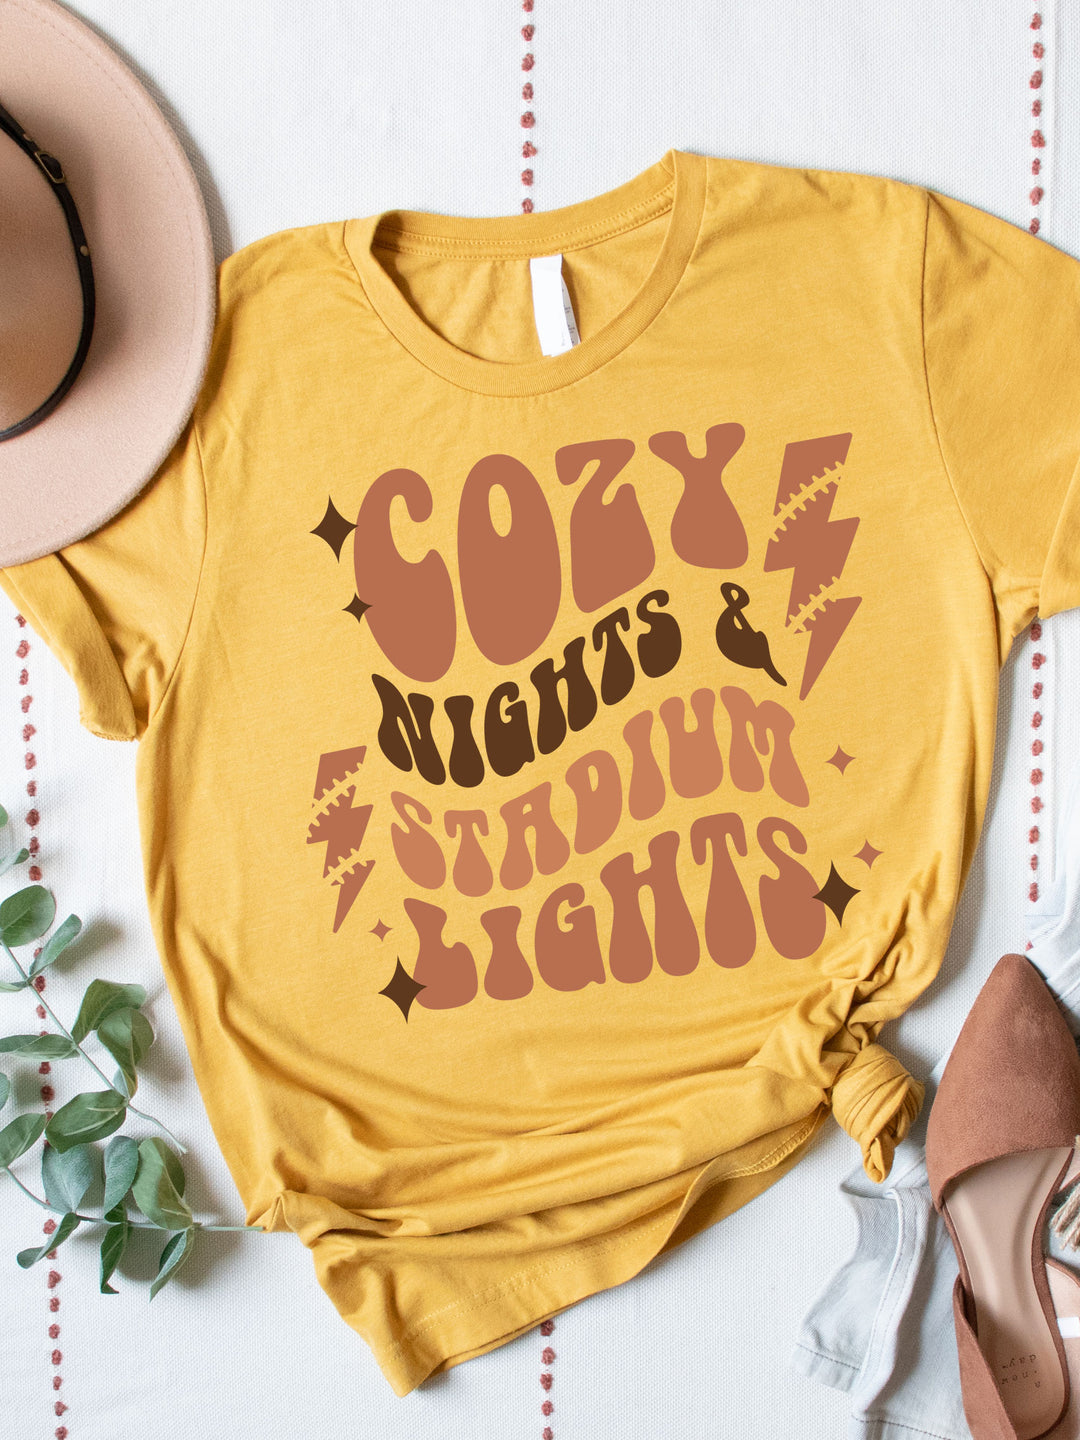 Cozy Nights & Stadium Lights Graphic Tee